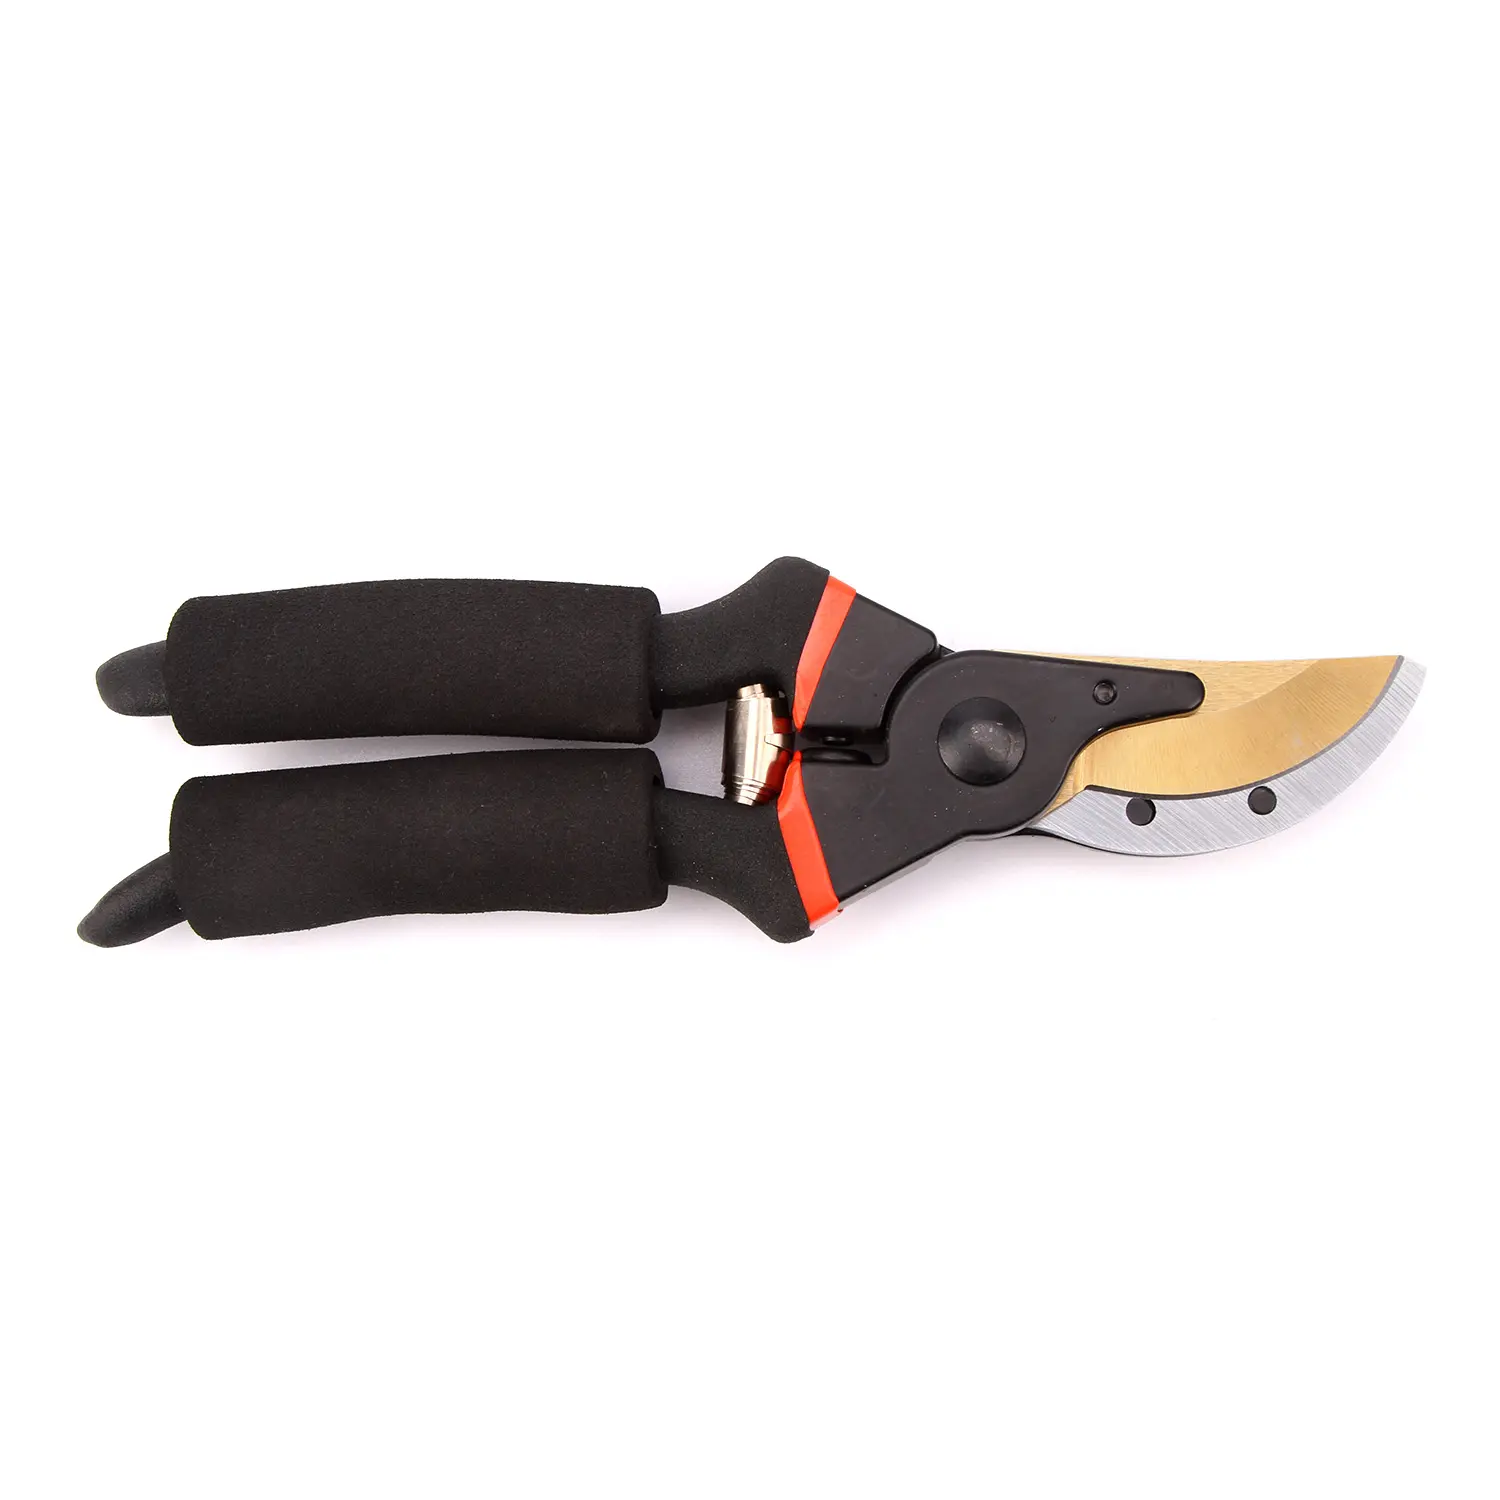 Soft Handle Gardening Pruner Hand Tools Garden Scissors with EVA Handle Aluminium Alloy